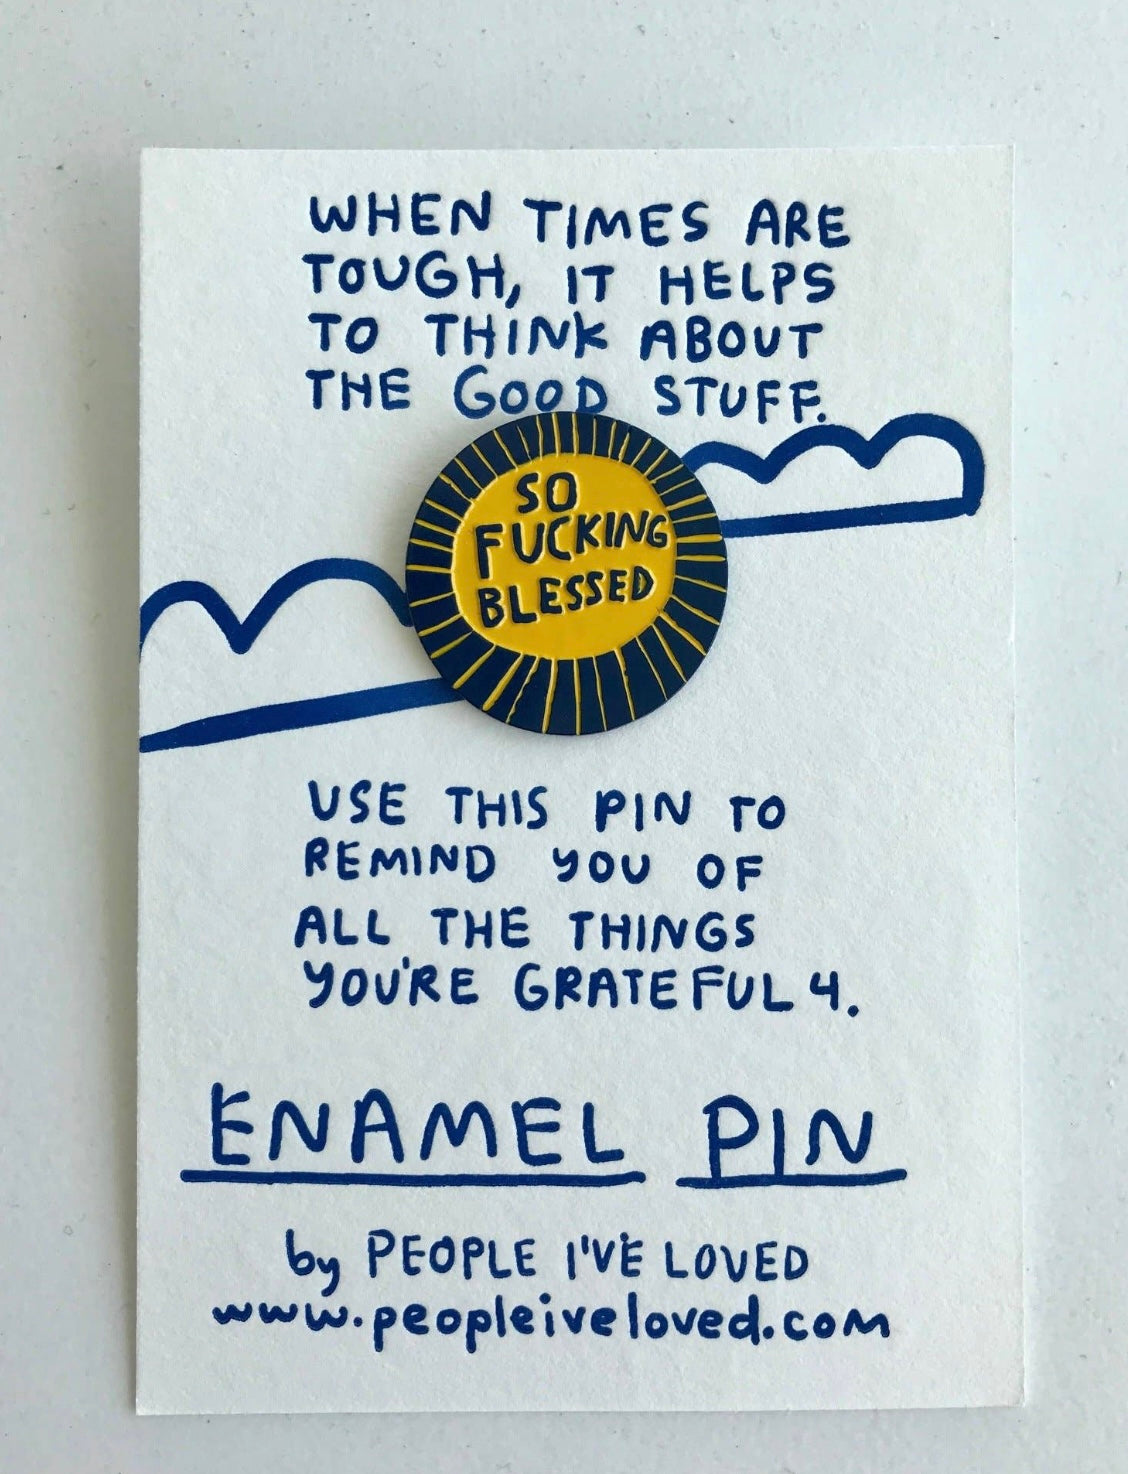 People I’ve Loved Pins n’ Things